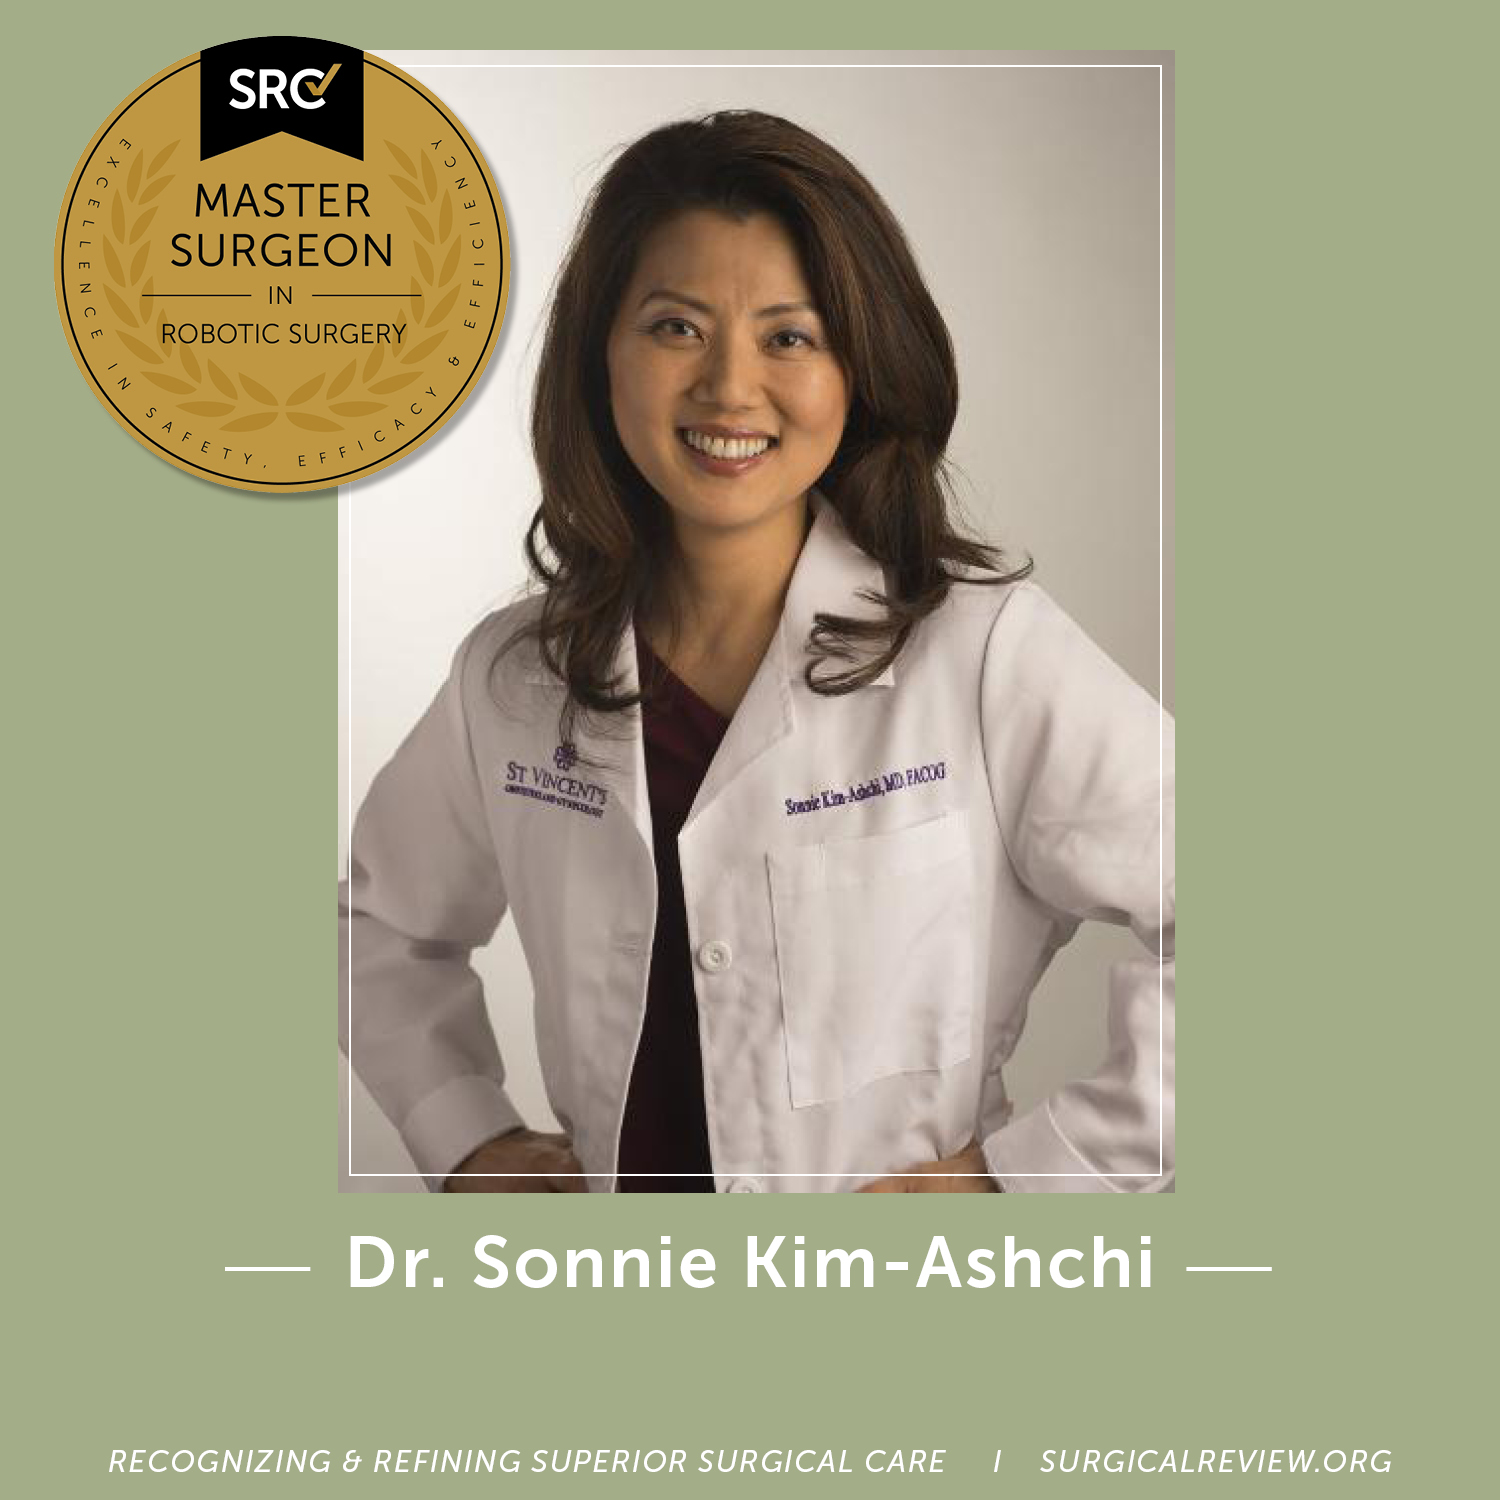 Dr. Sonnie Kim-Ashchi